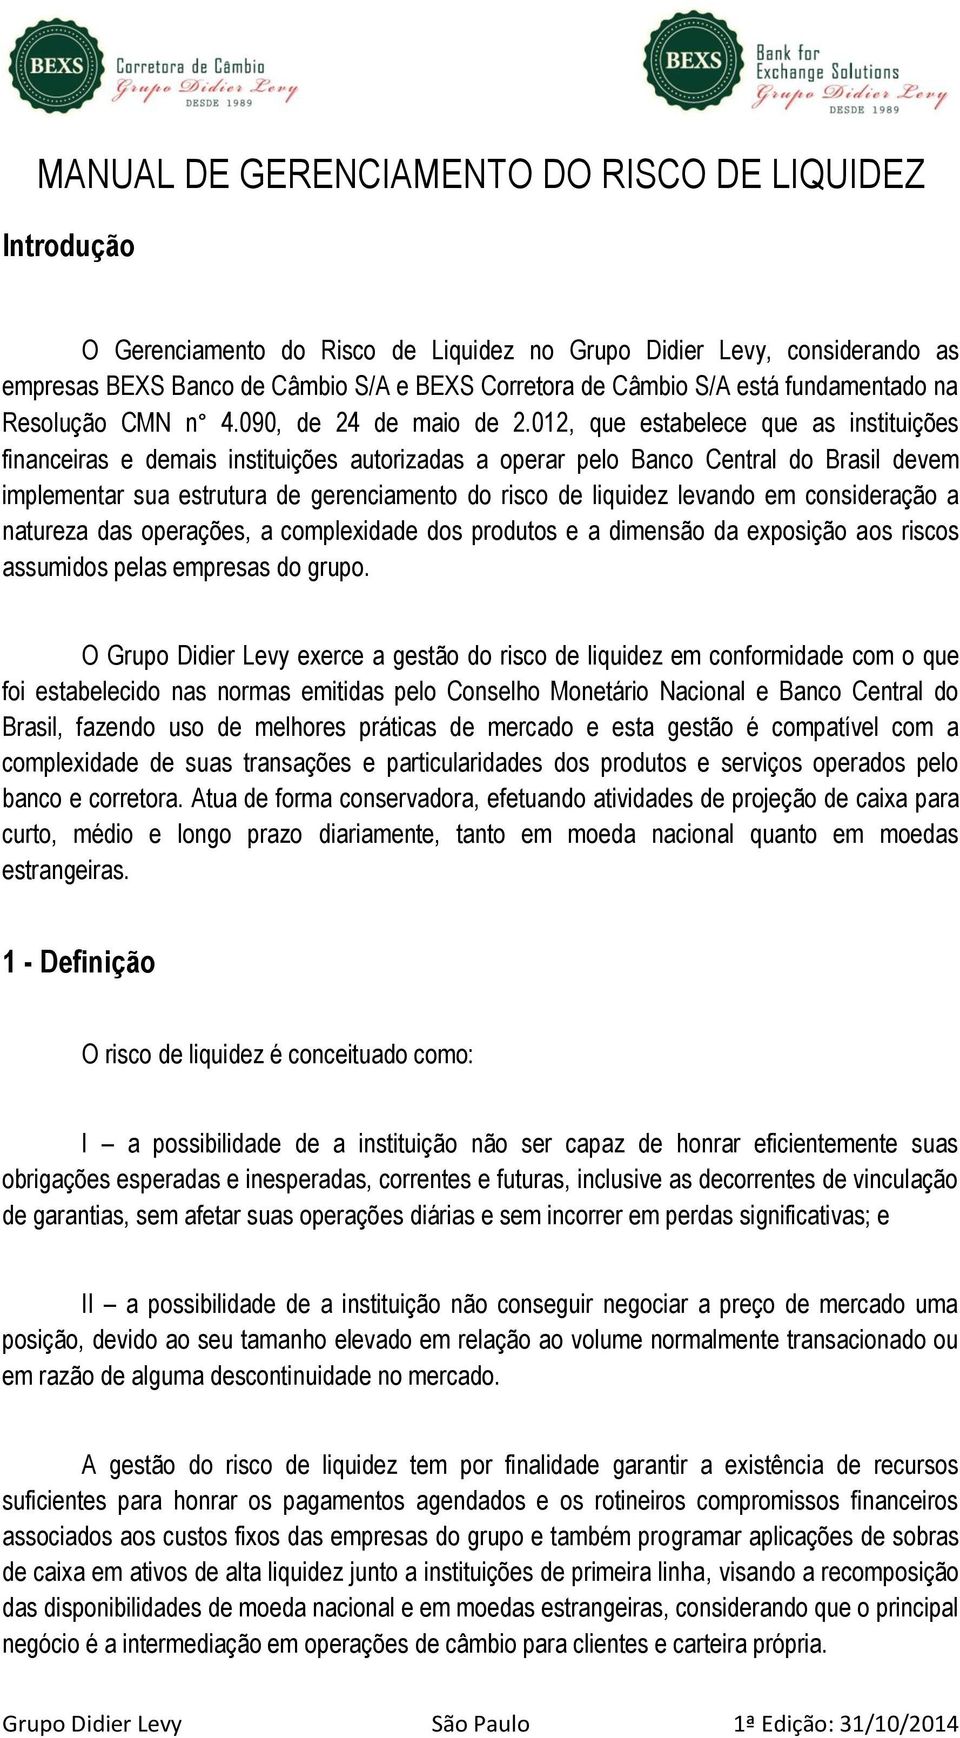 012, que estabelece que as instituições financeiras e demais instituições autorizadas a operar pelo Banco Central do Brasil devem implementar sua estrutura de gerenciamento do risco de liquidez